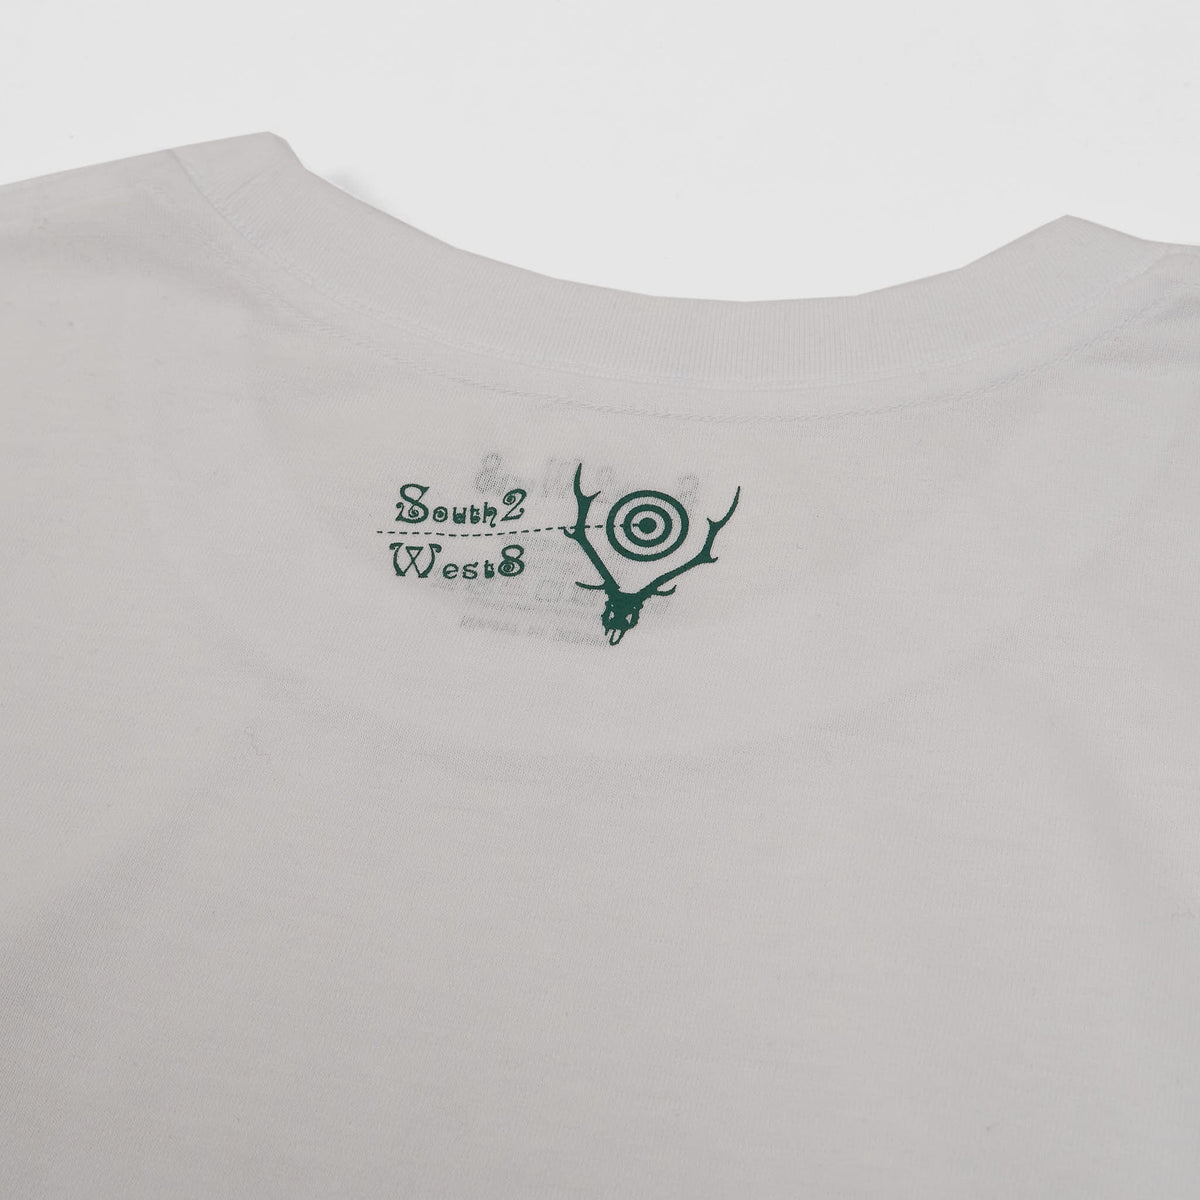 South2 West8 x Ben Miller Painted Rock Long Sleeve T-Shirt